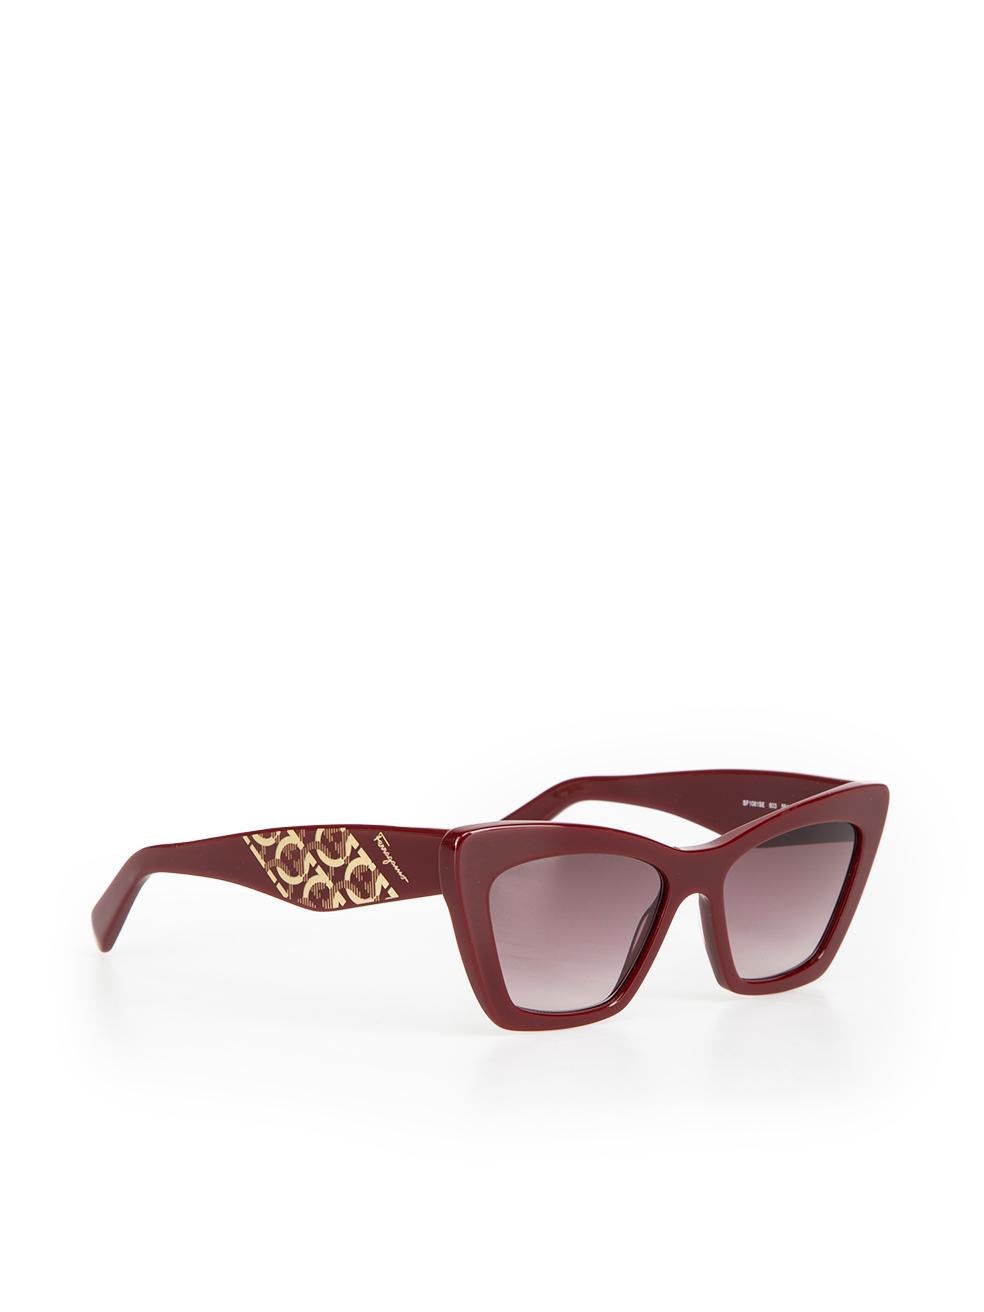 Salvatore Ferragamo Bordeaux Cat Eye Sunglasses In New Condition For Sale In London, GB